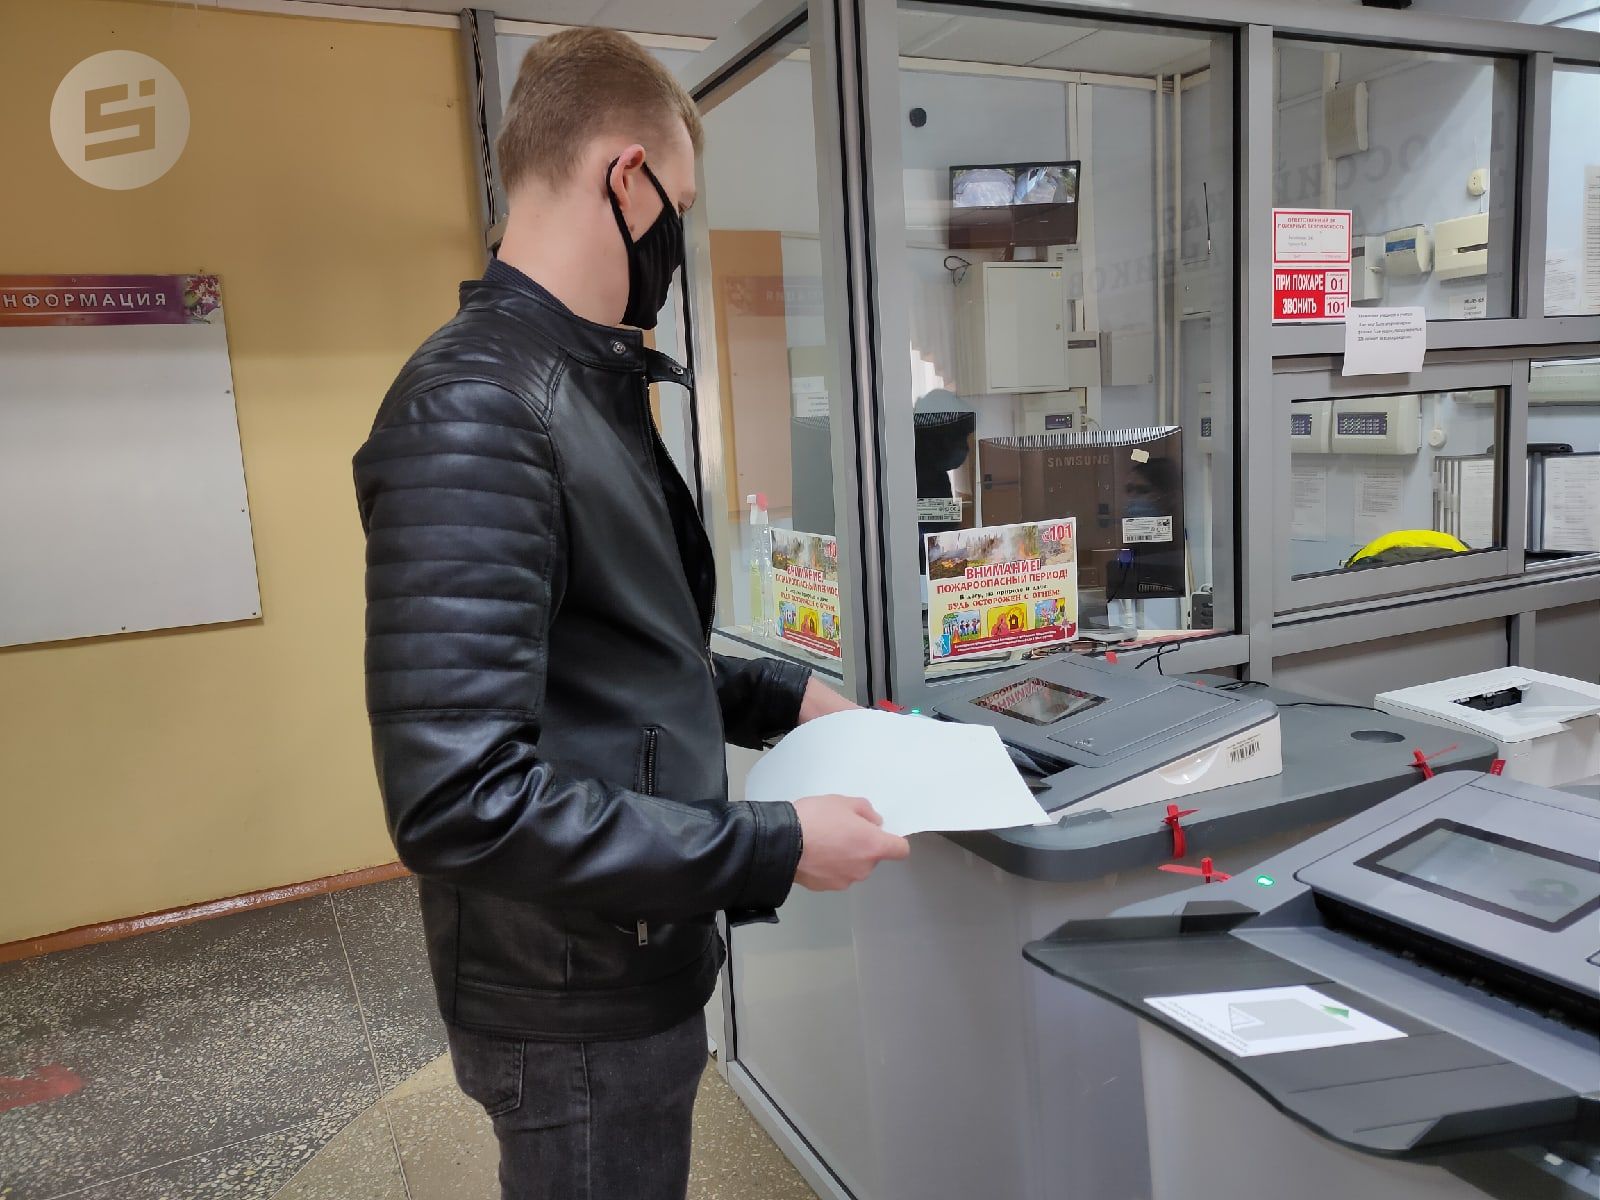 Явка на выборы депутатов Гордумы в Ижевске на 15:00 составила 13,62%